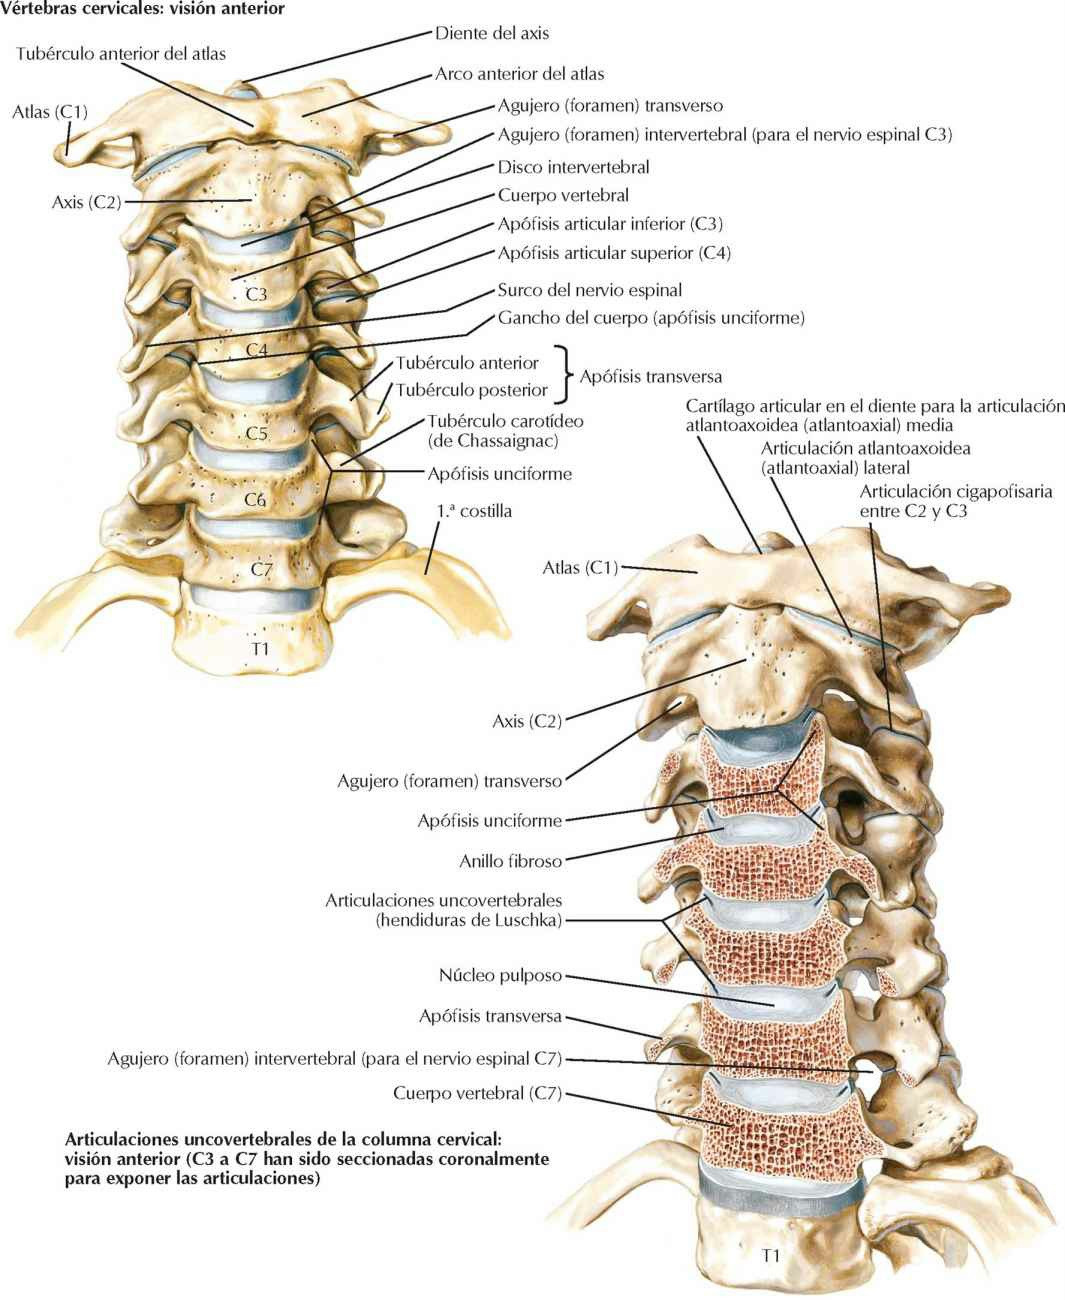 Vértebras cervicales: articulaciones
uncovertebrales.